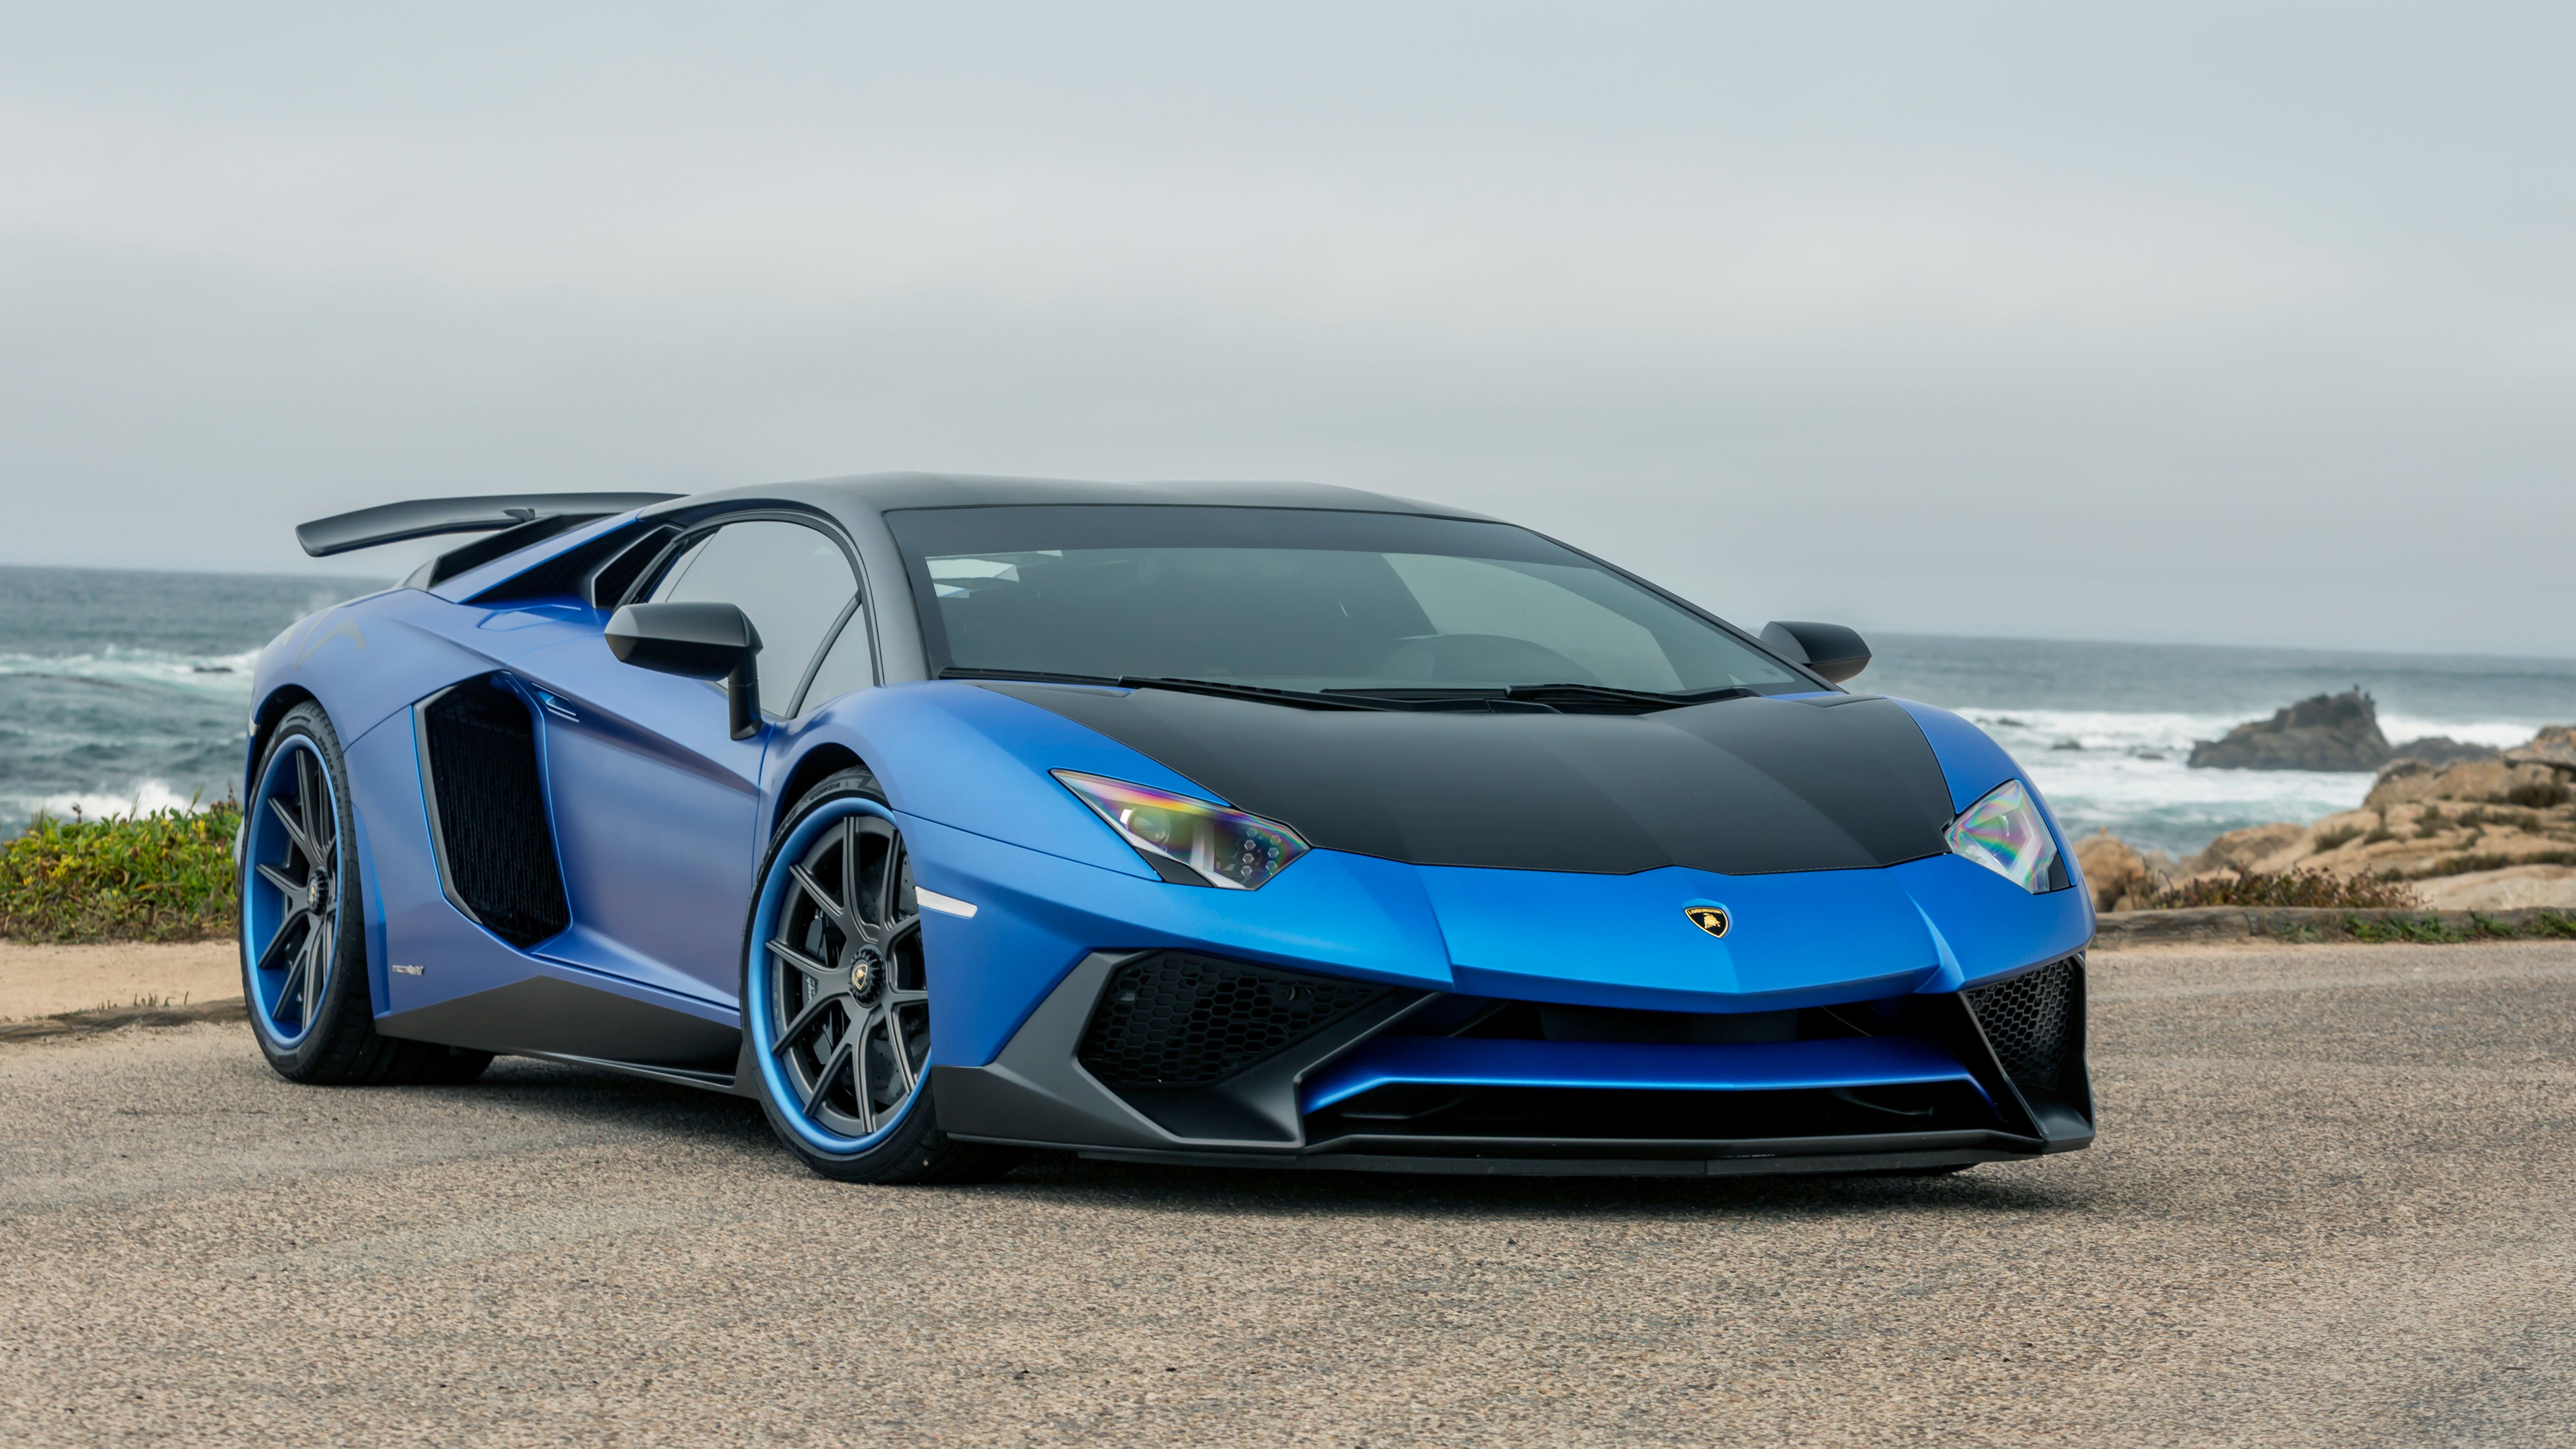 Blue Lamborghini Wallpaper 1080p. Sports cars lamborghini